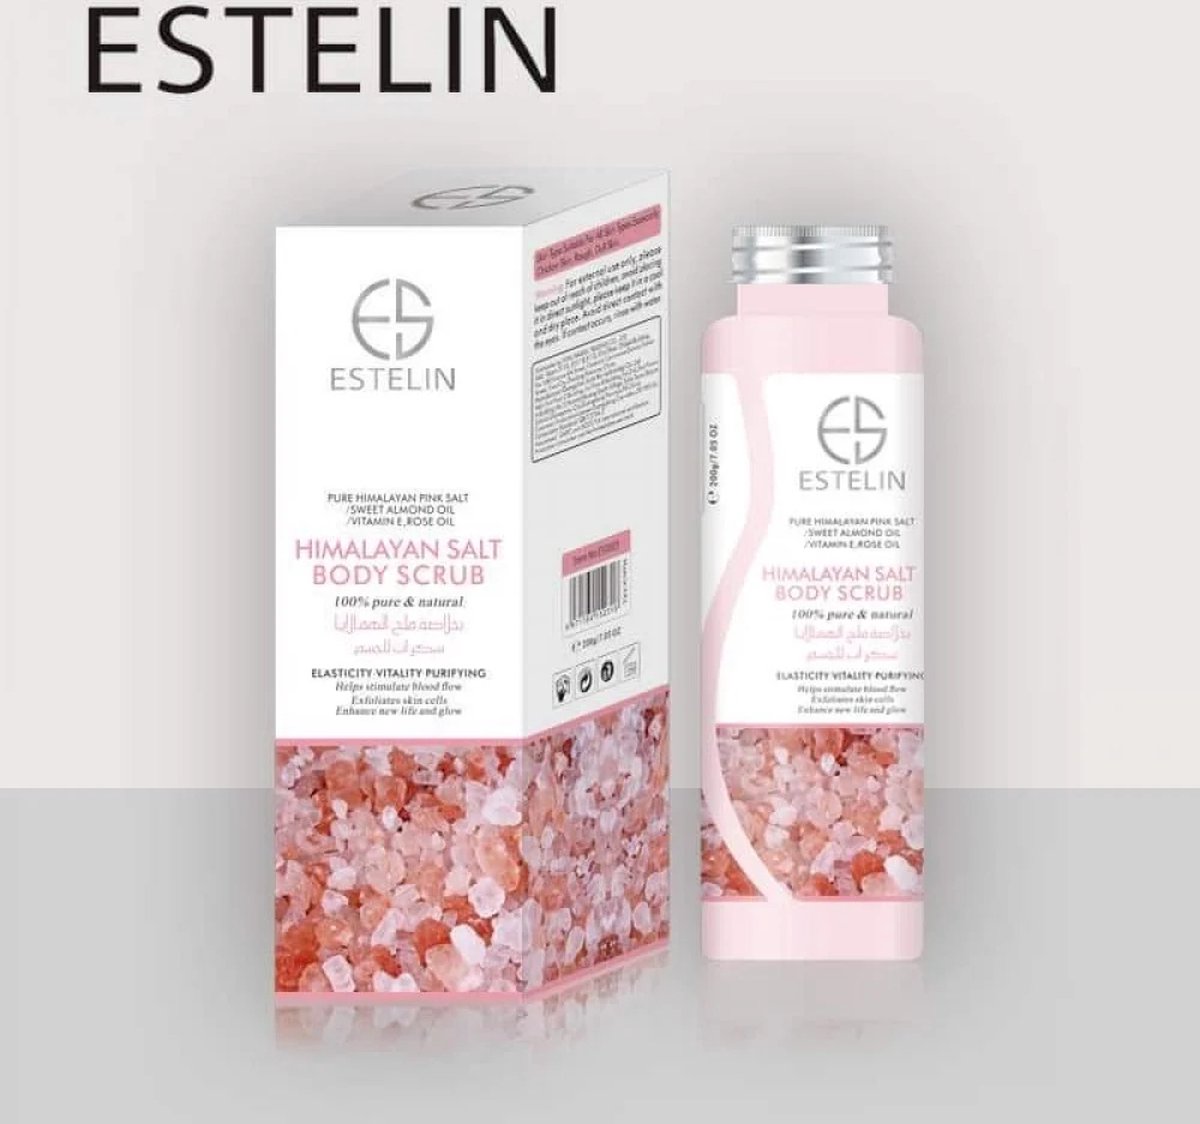 Estelin Himalayan salt body scrub